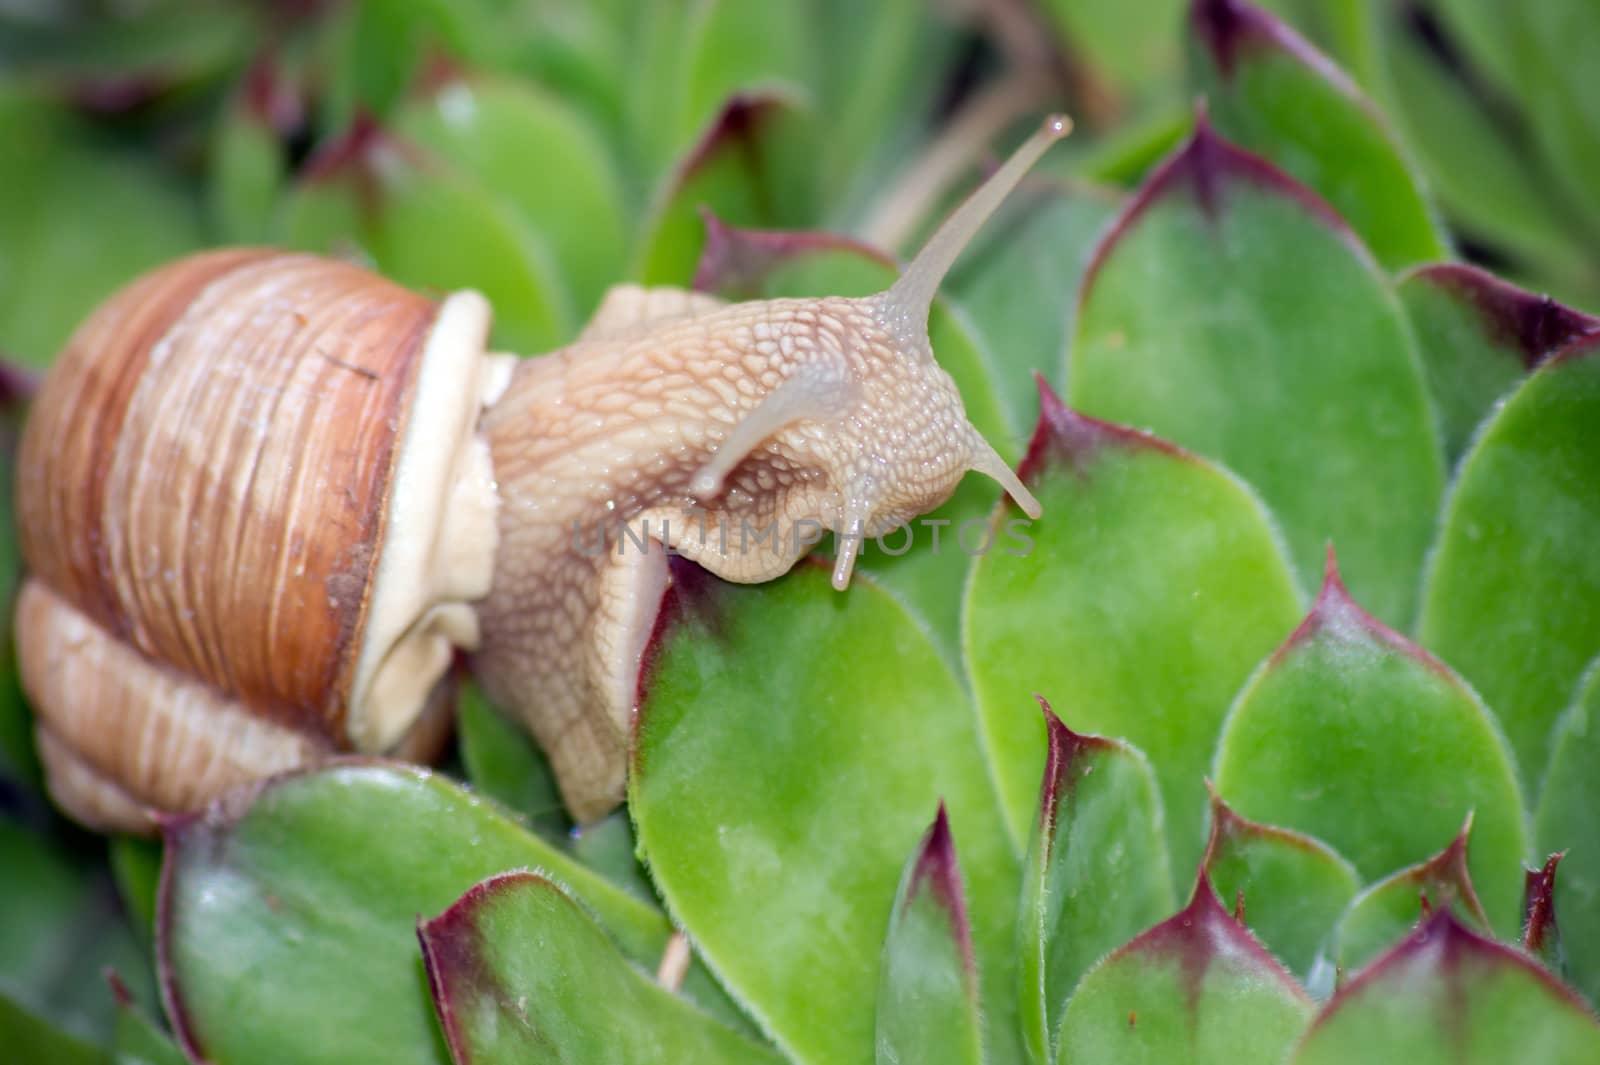 The snails (Helix pomatia) by dadalia